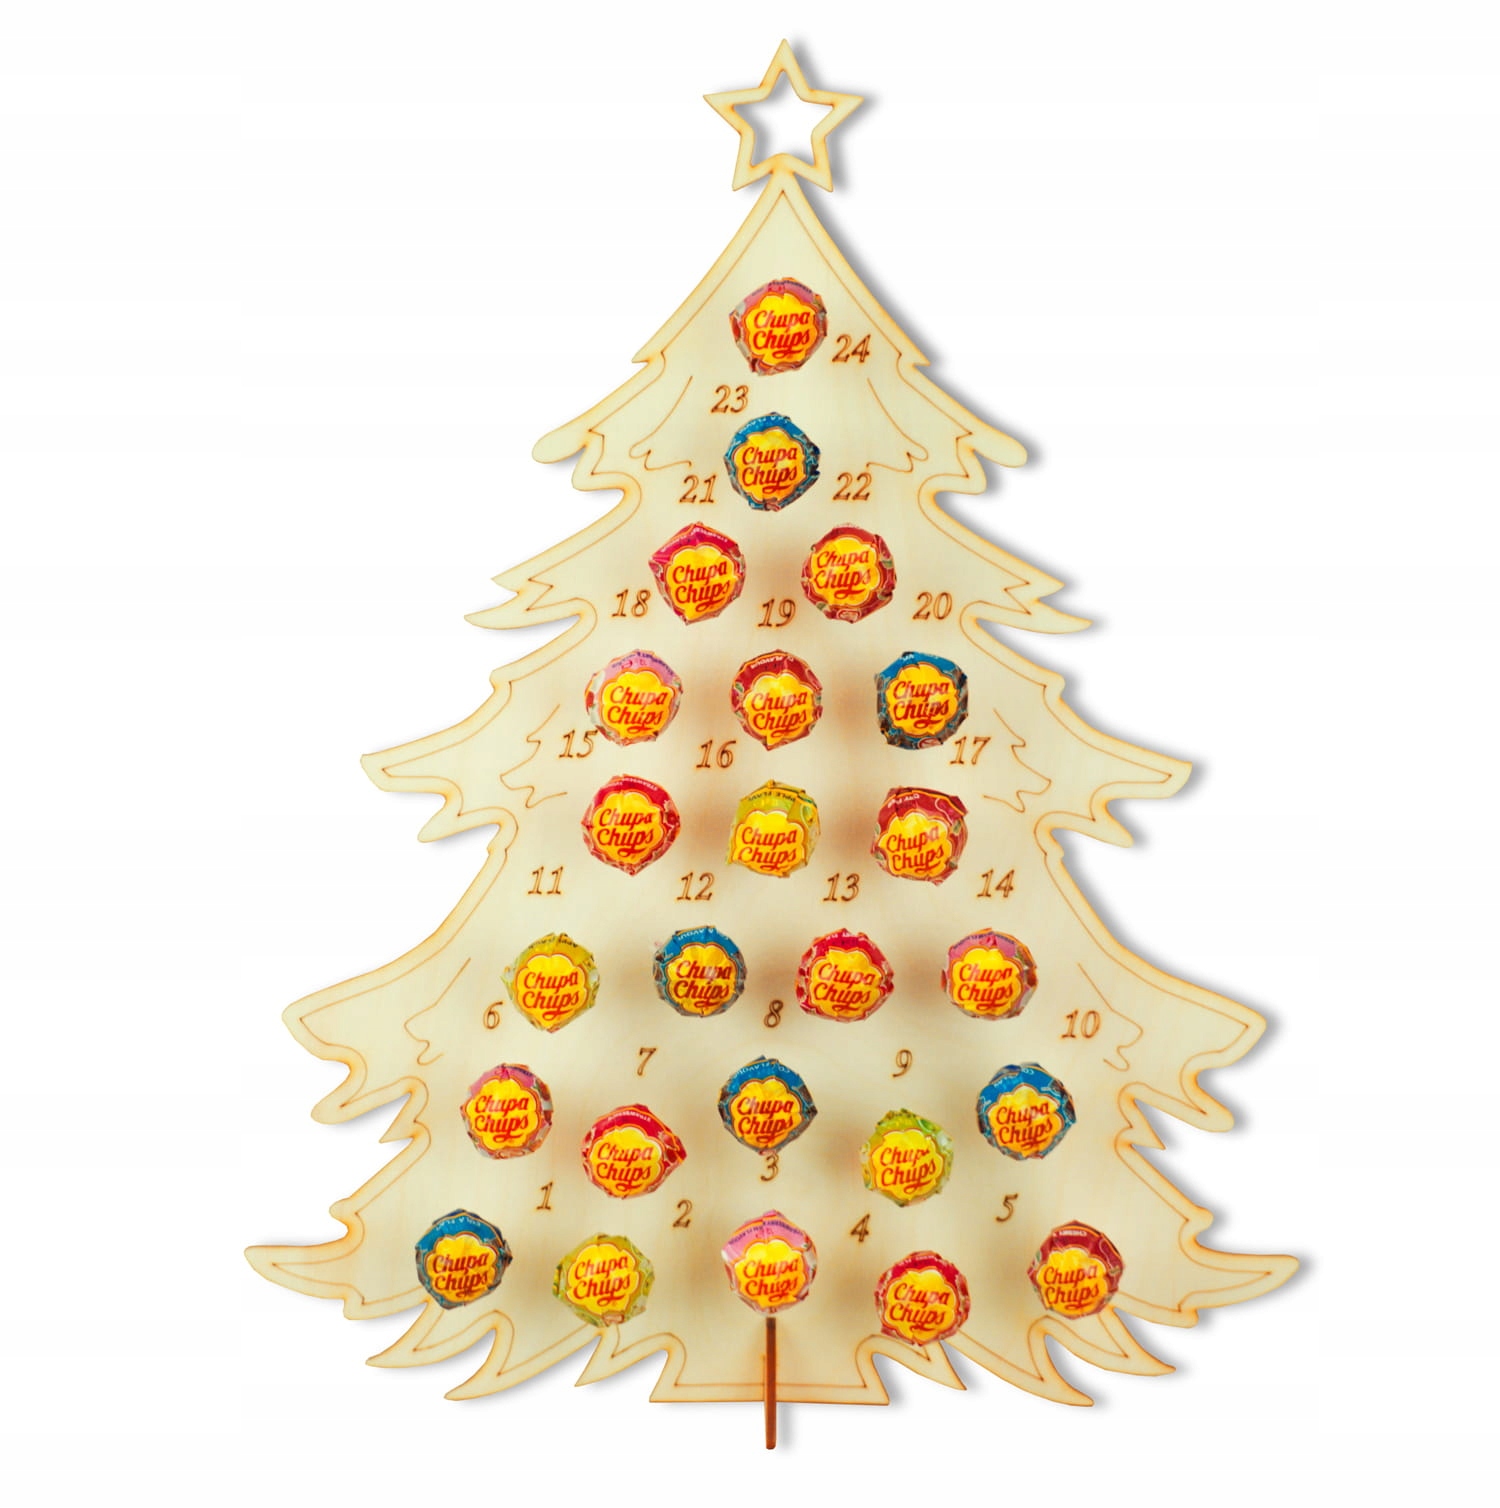 Adventný kalendár Vianočný stromček s lízankami CHUPA CHUPS 24 lízanky